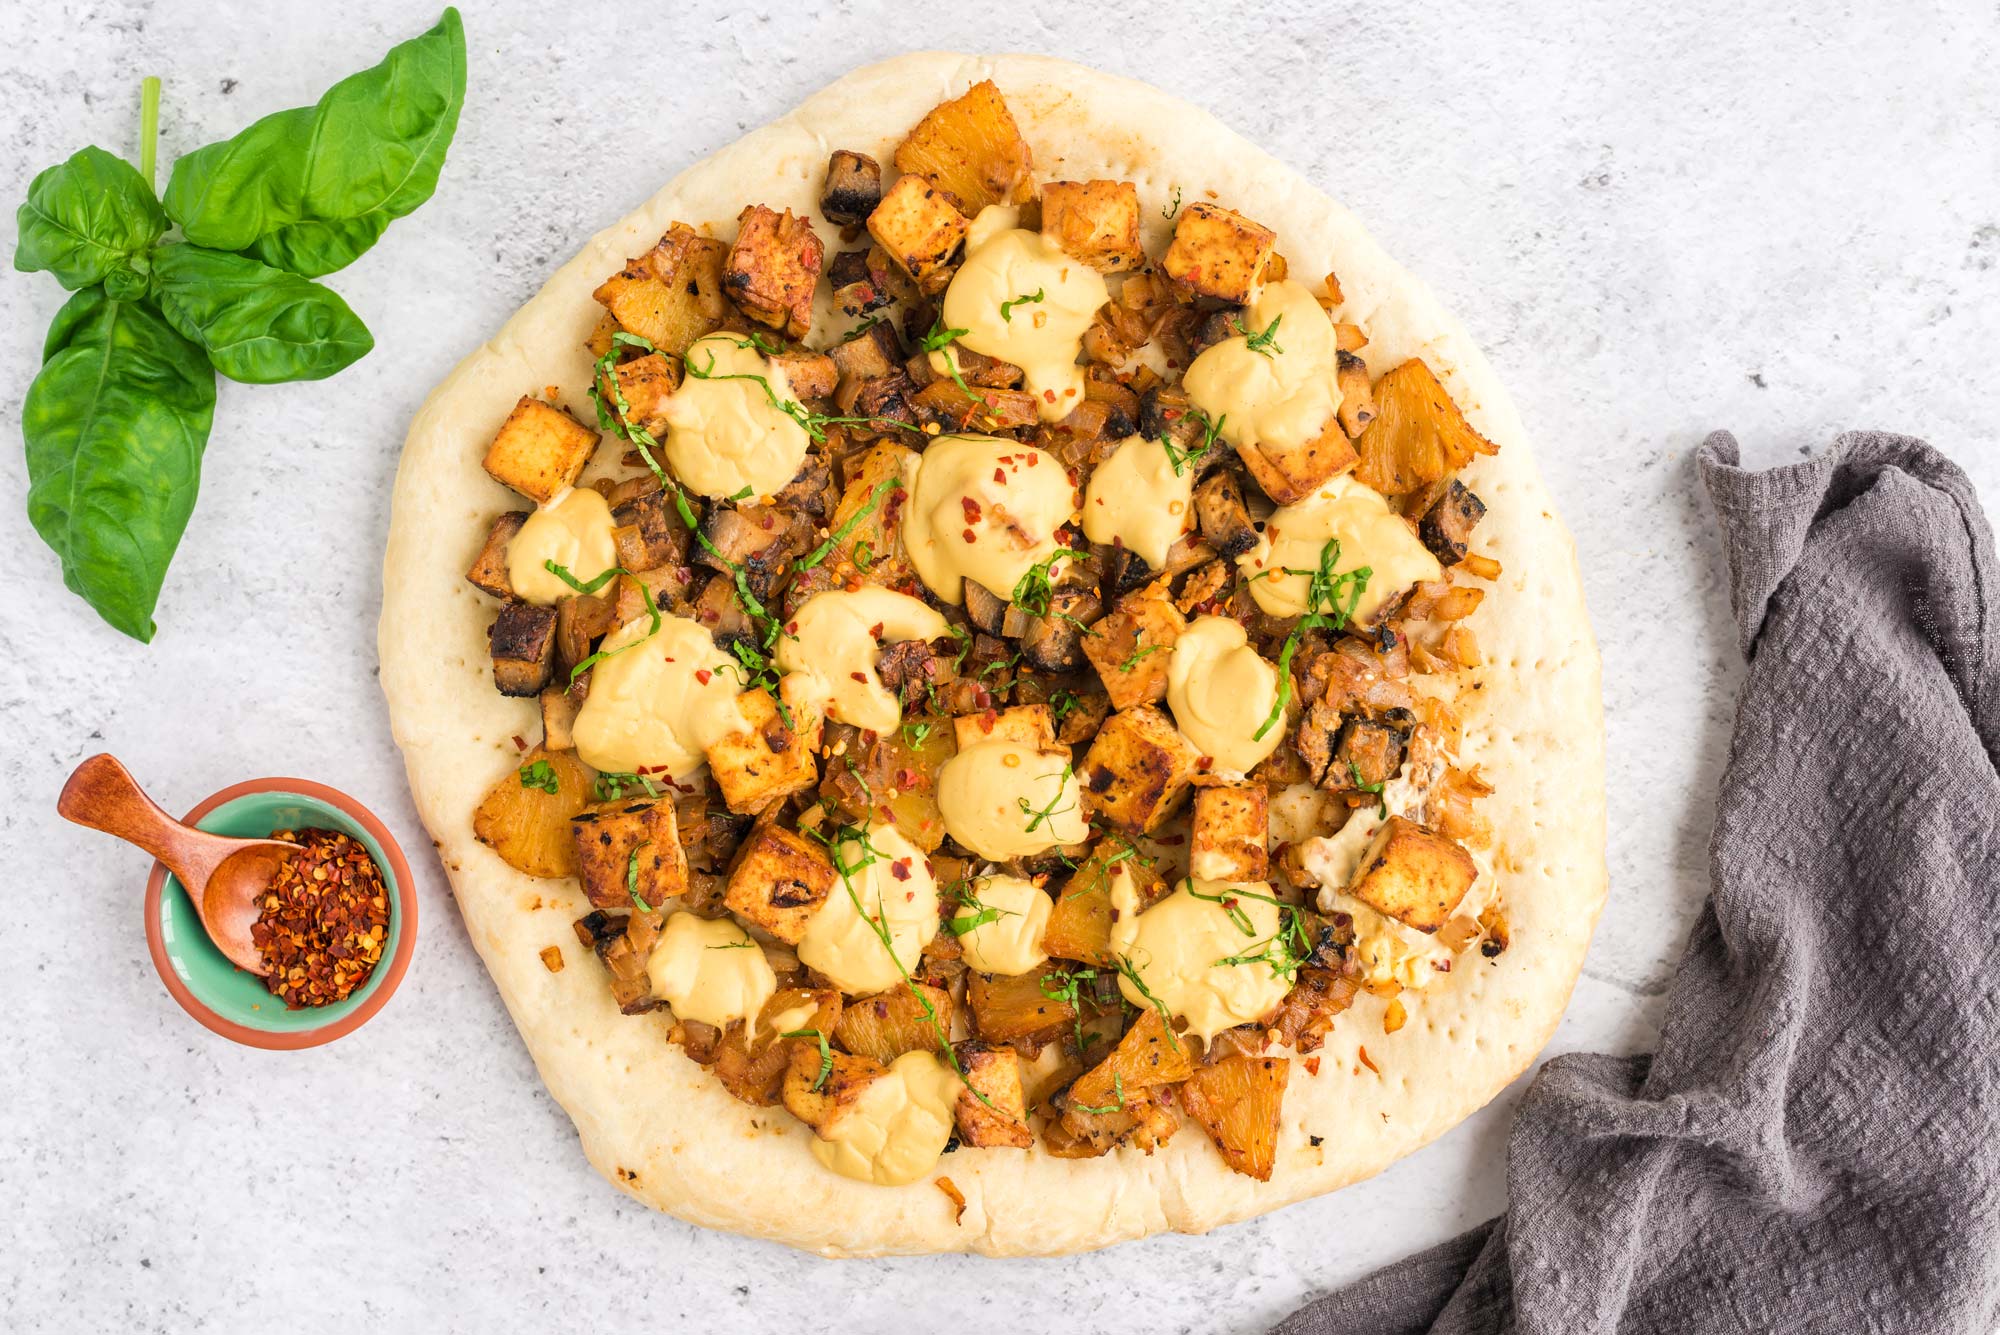 Plant based pizzas: Tofu mushroom pineapple pizza